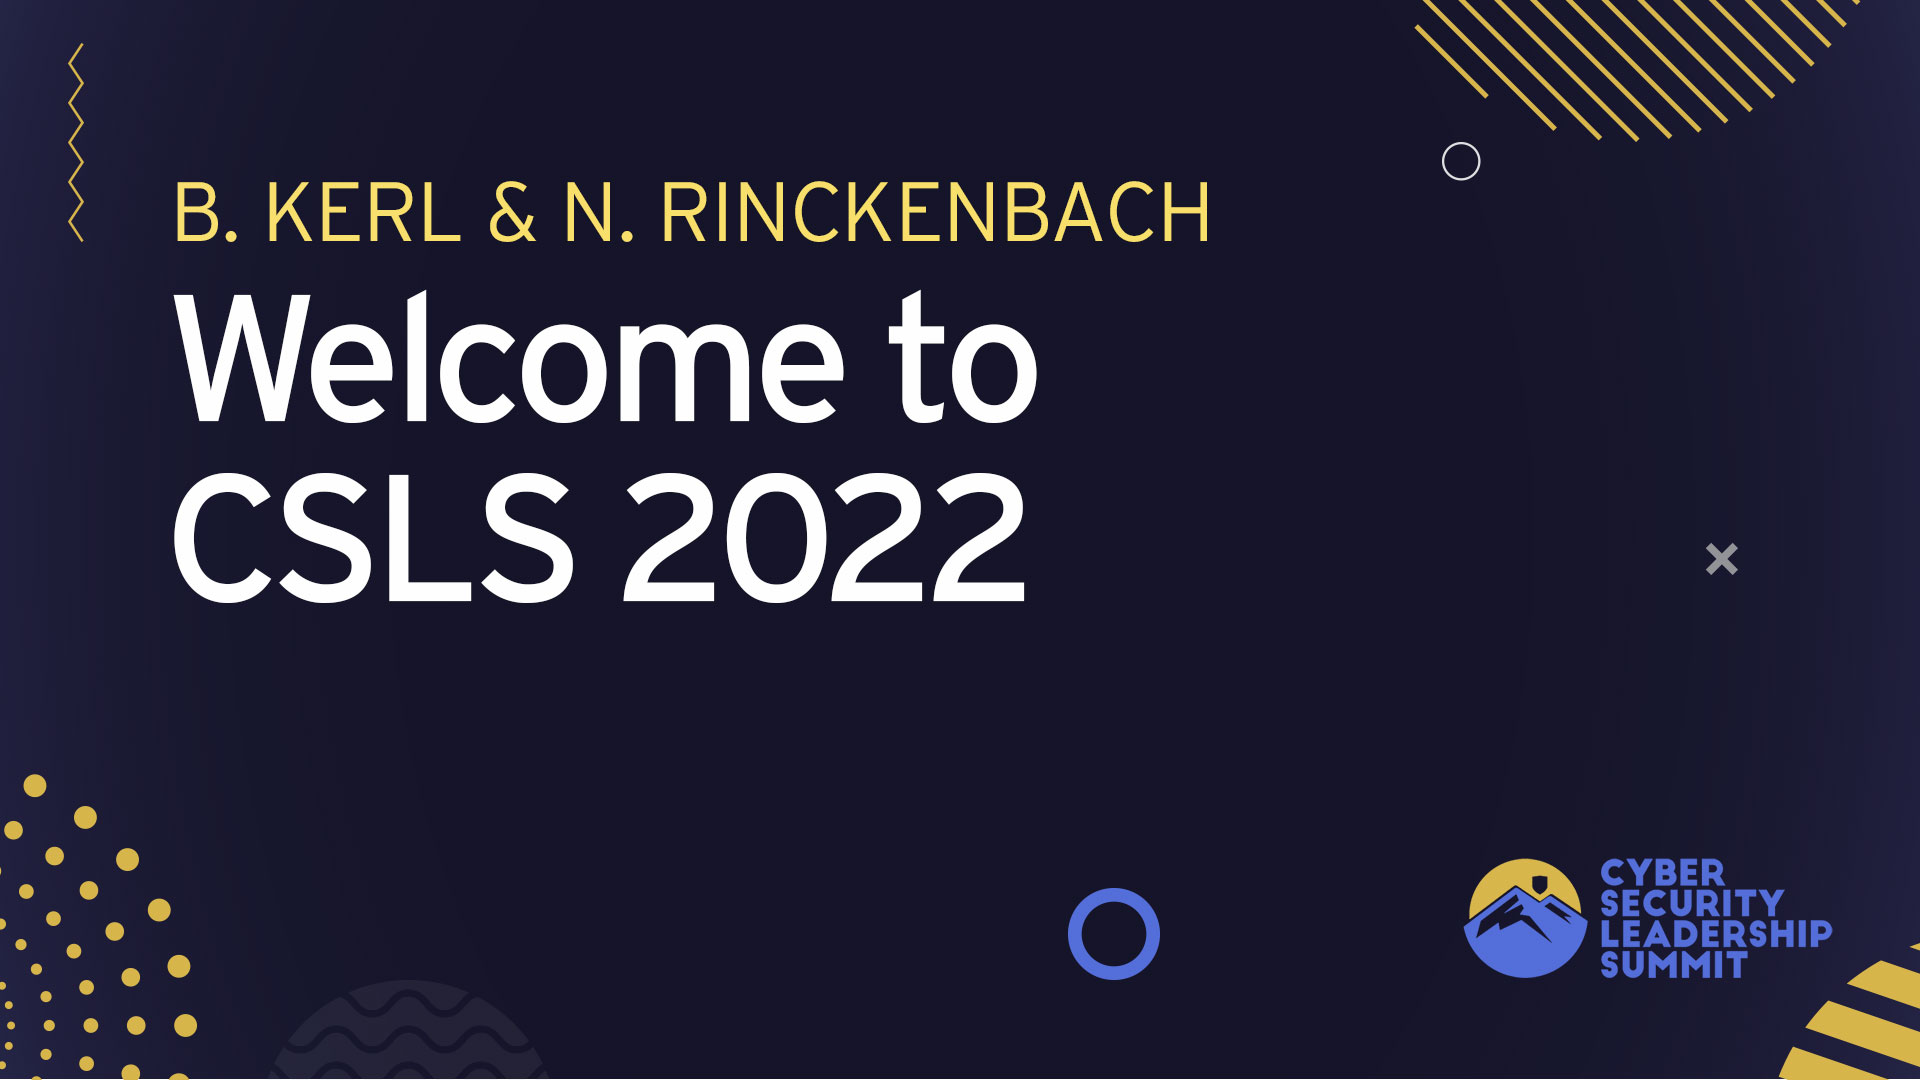 Welcome to CSLS 2022